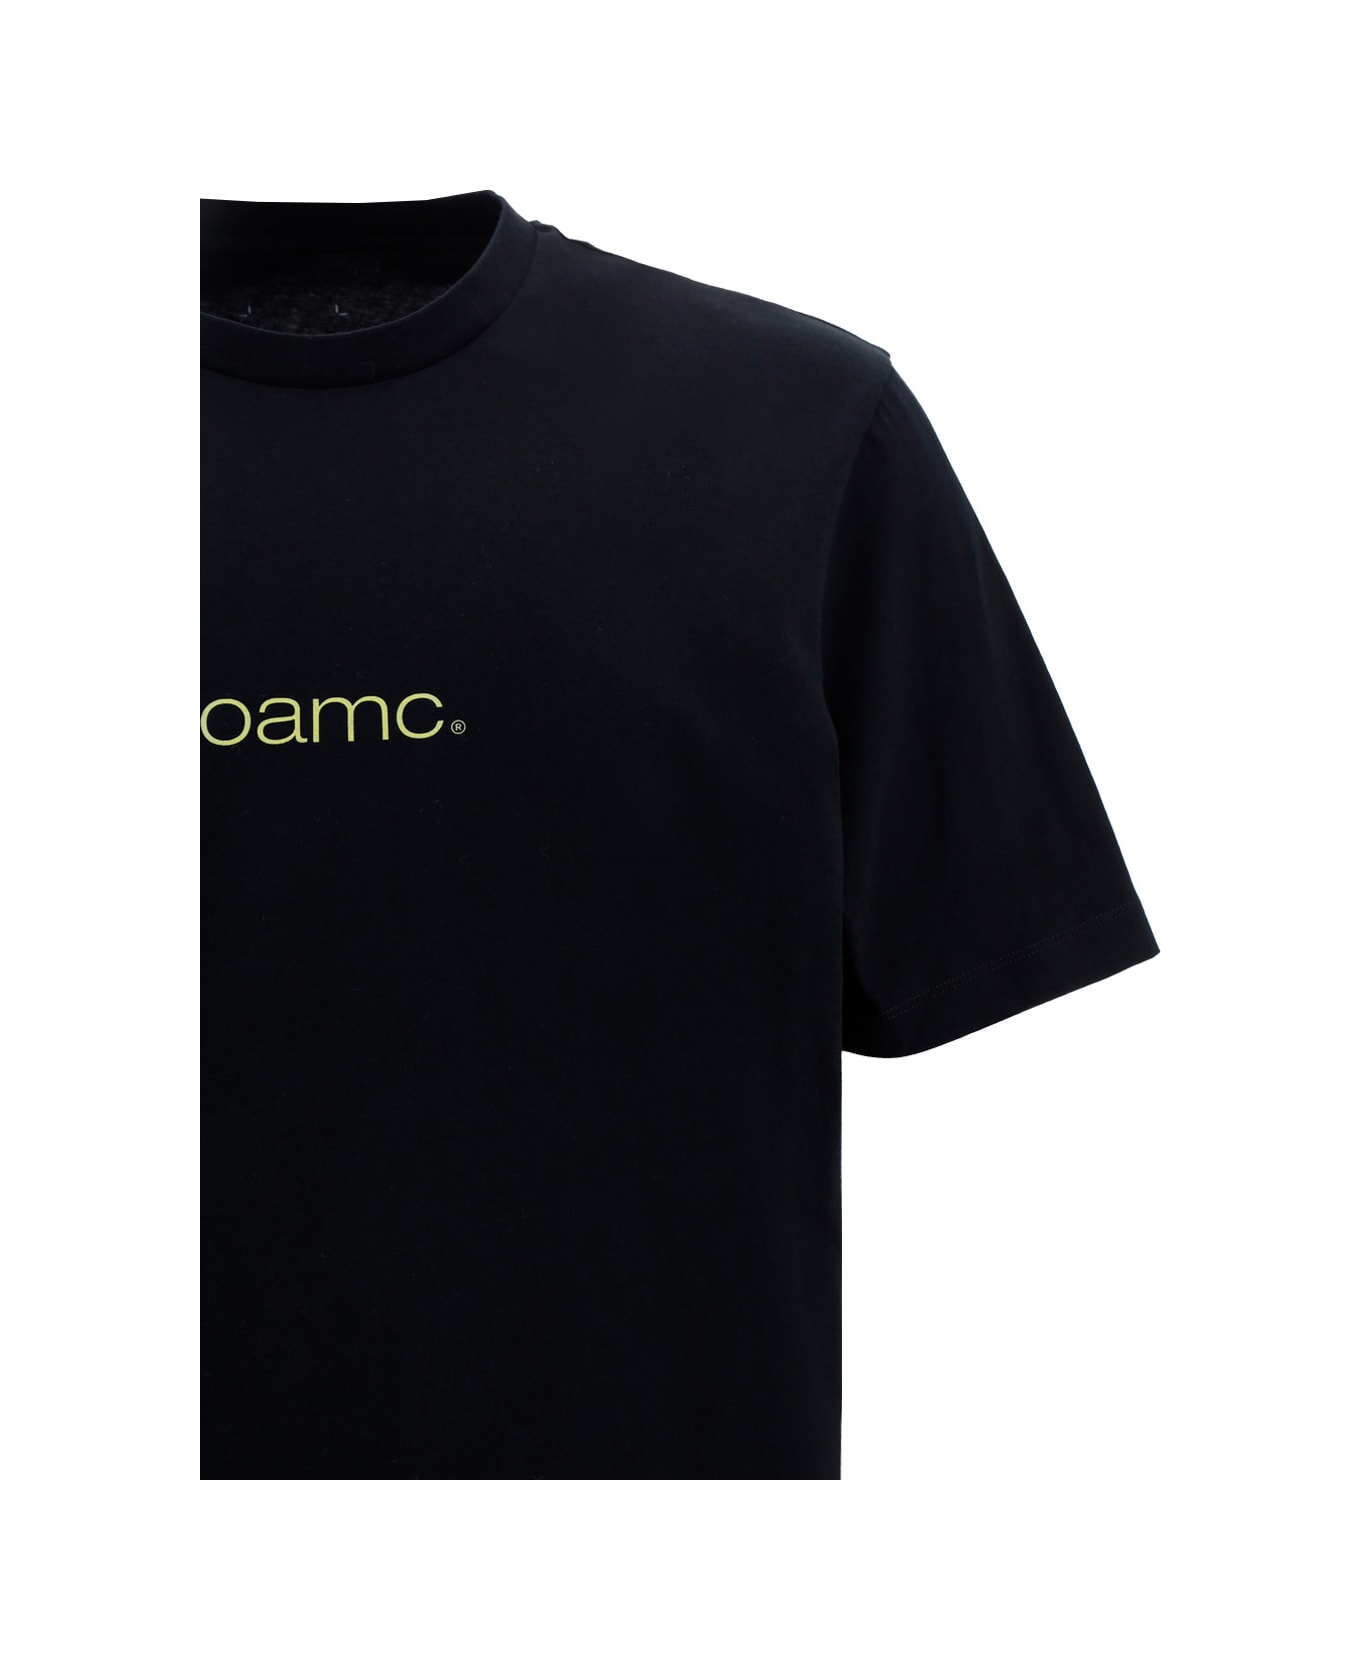 OAMC Speed T-shirt - Black シャツ